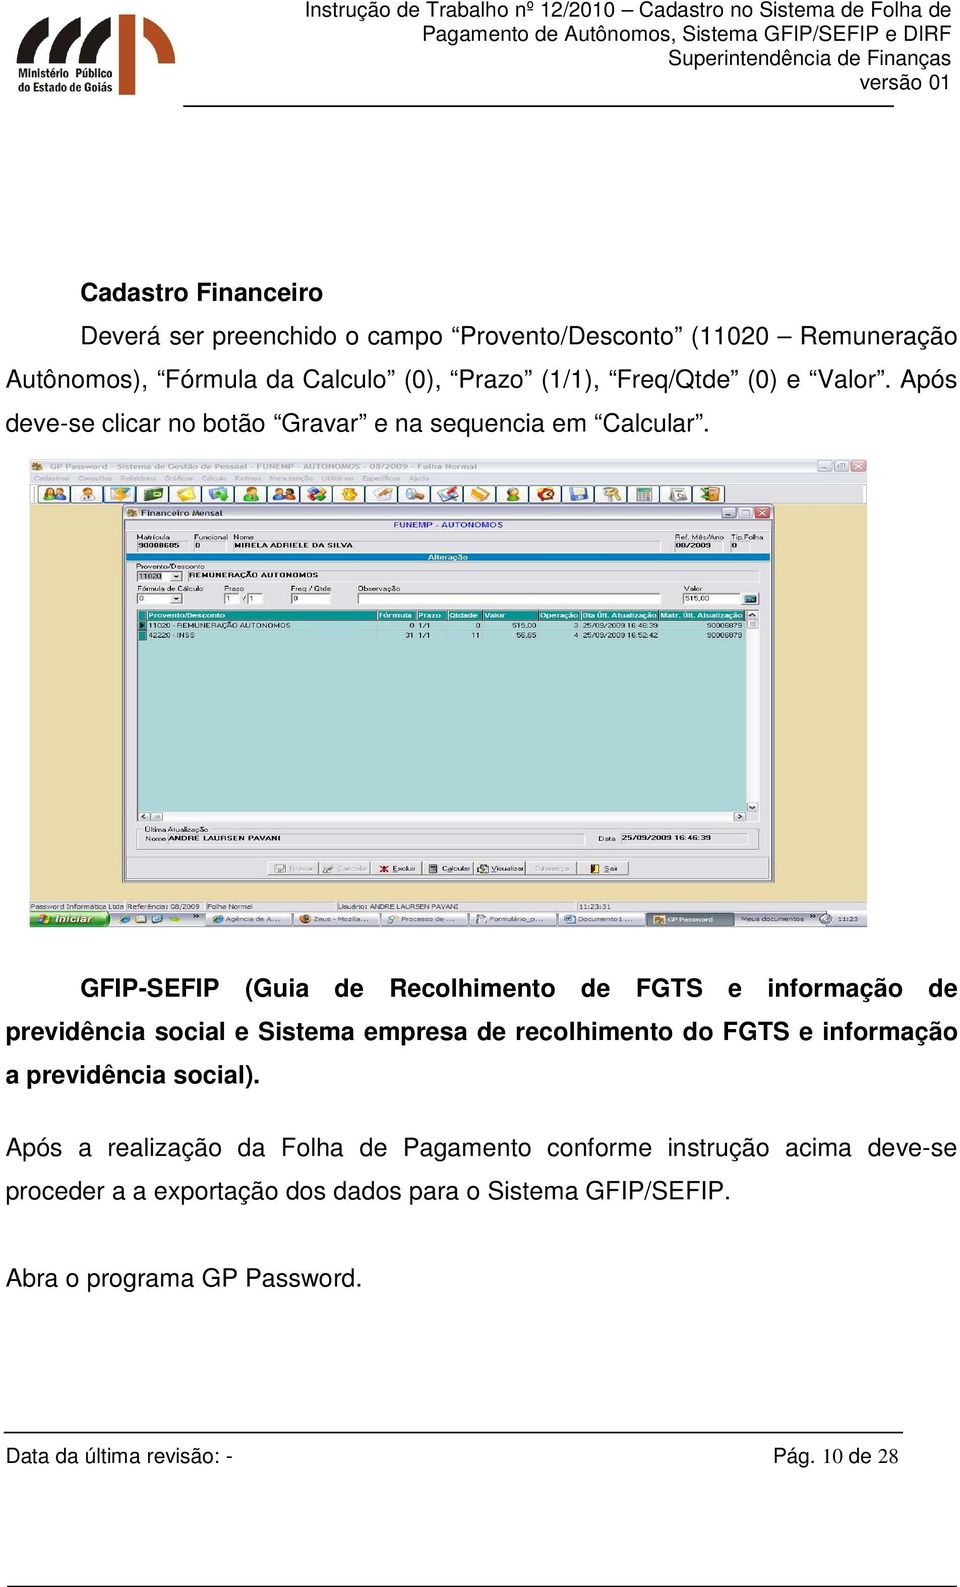 GFIP-SEFIP (Guia de Recolhimento de FGTS e informação de previdência social e Sistema empresa de recolhimento do FGTS e informação a previdência